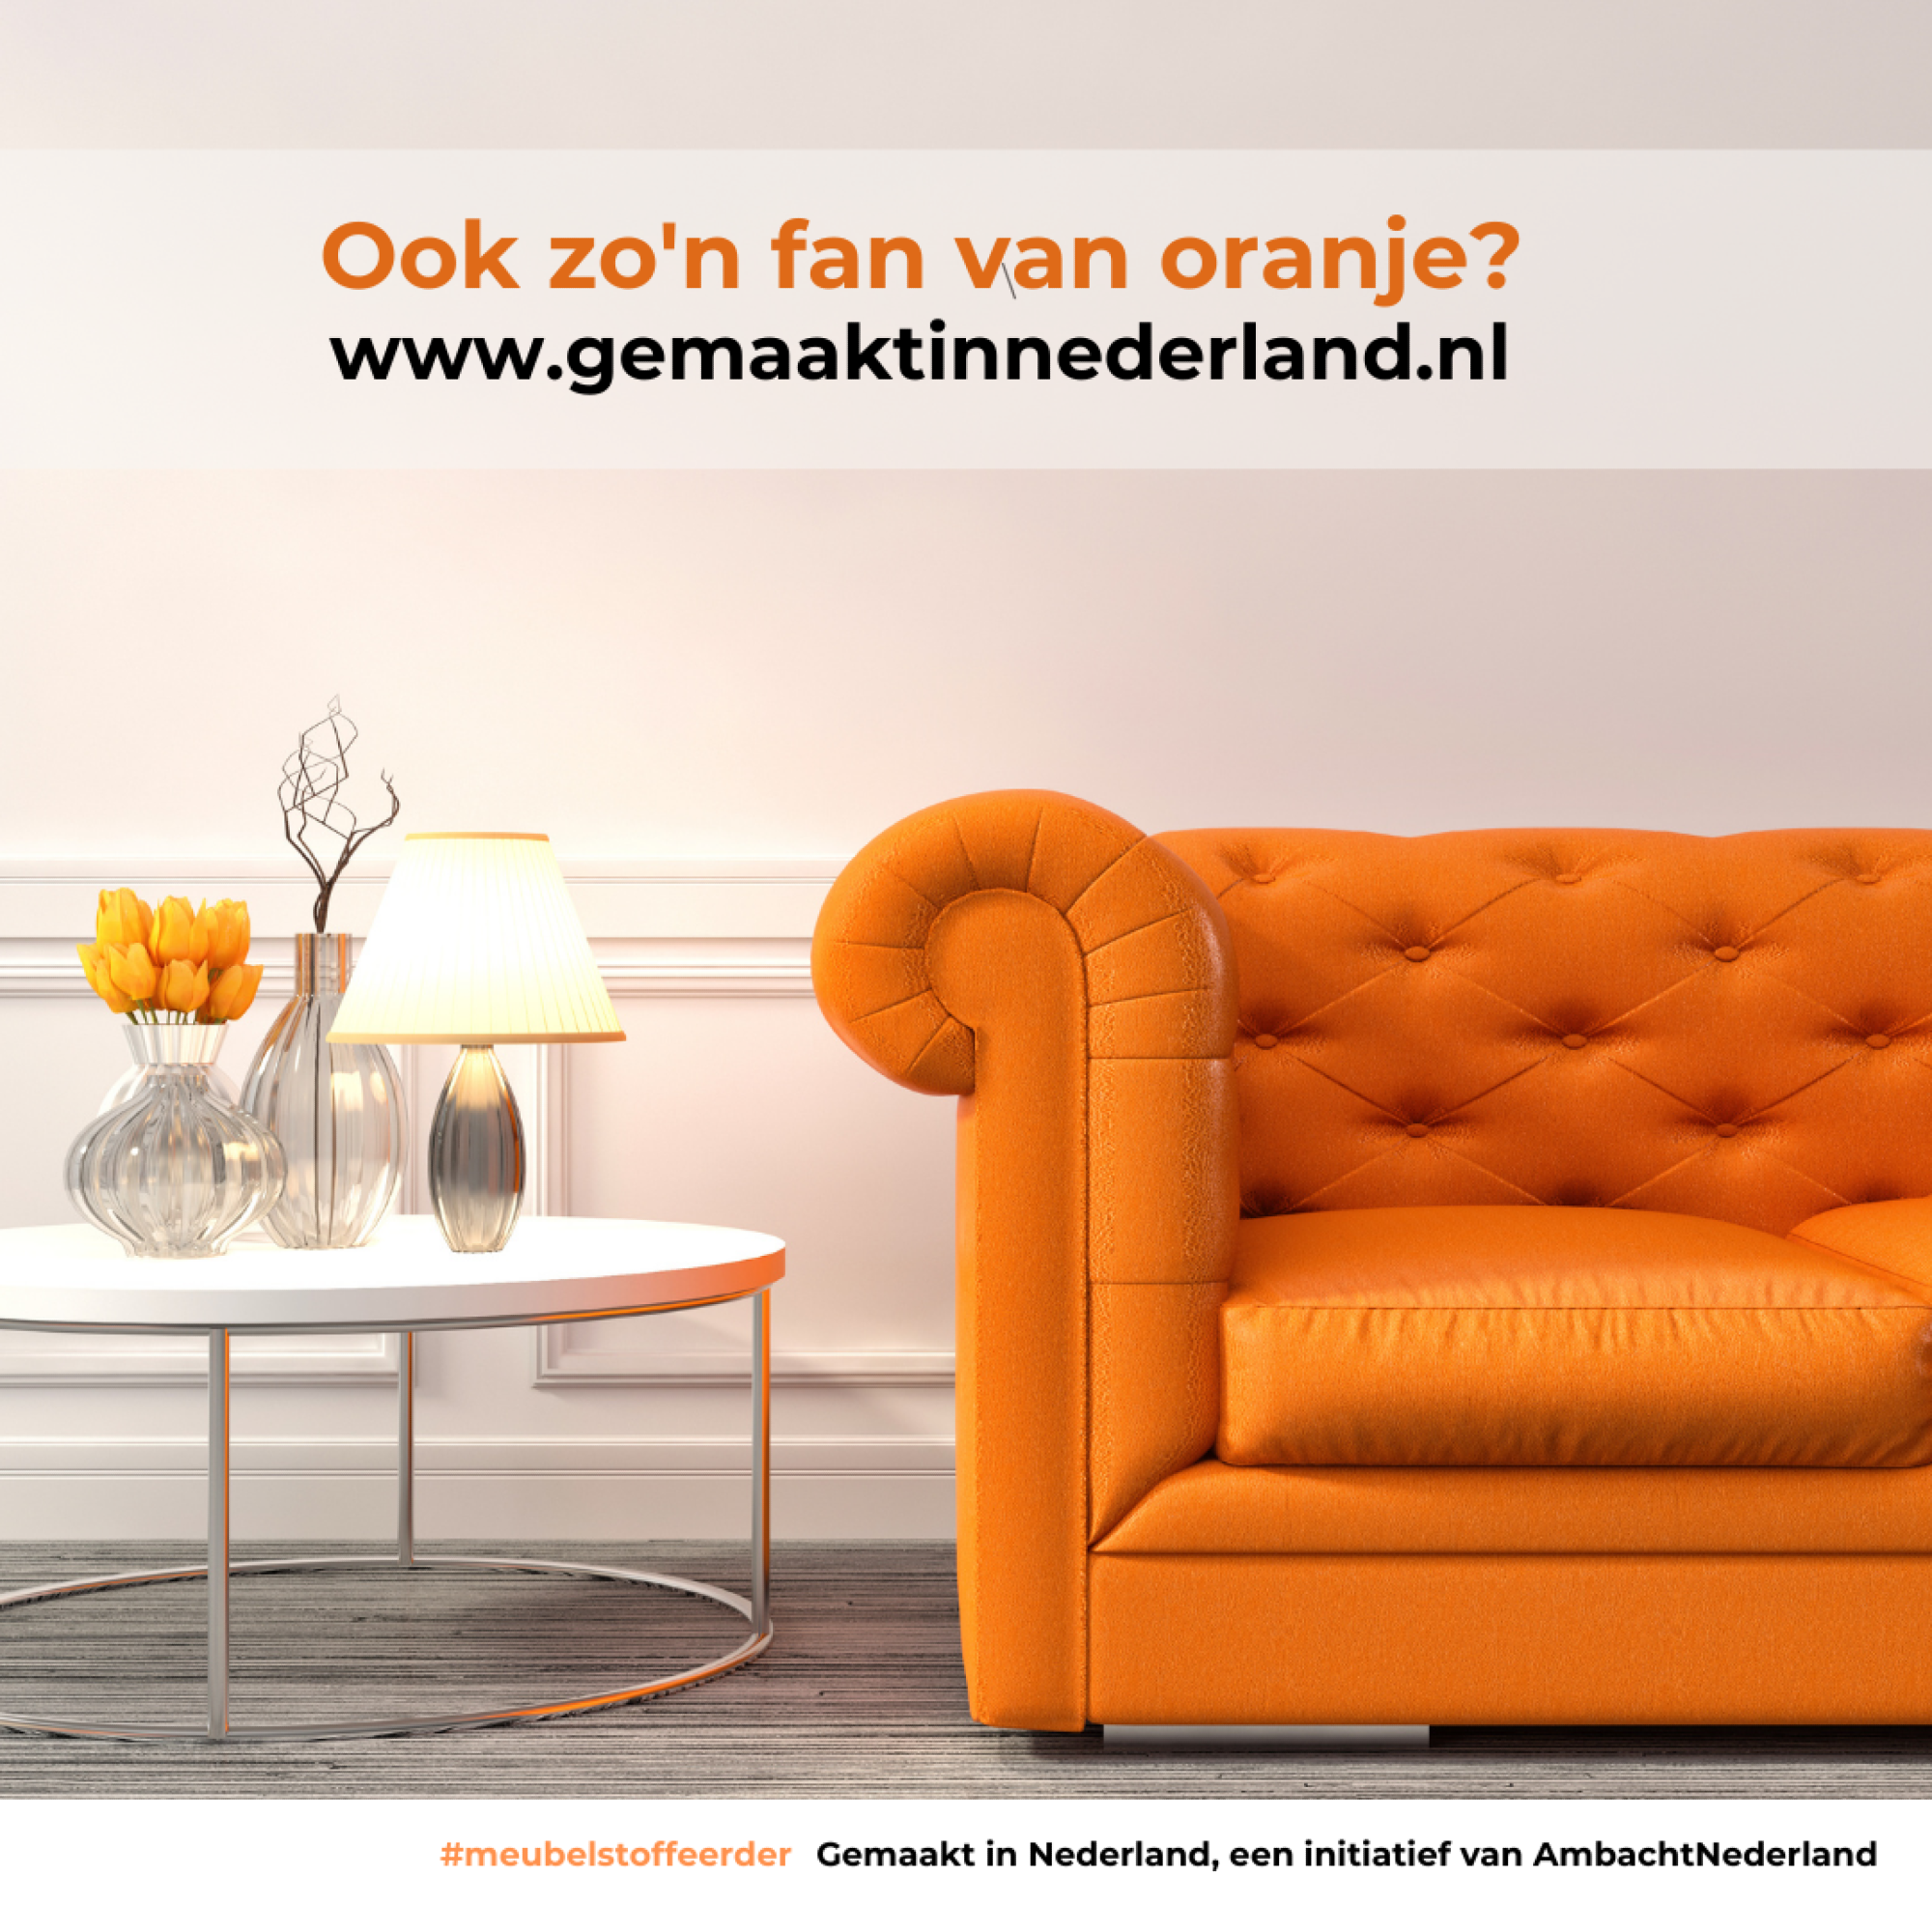 Campagne voor fans van oranje!